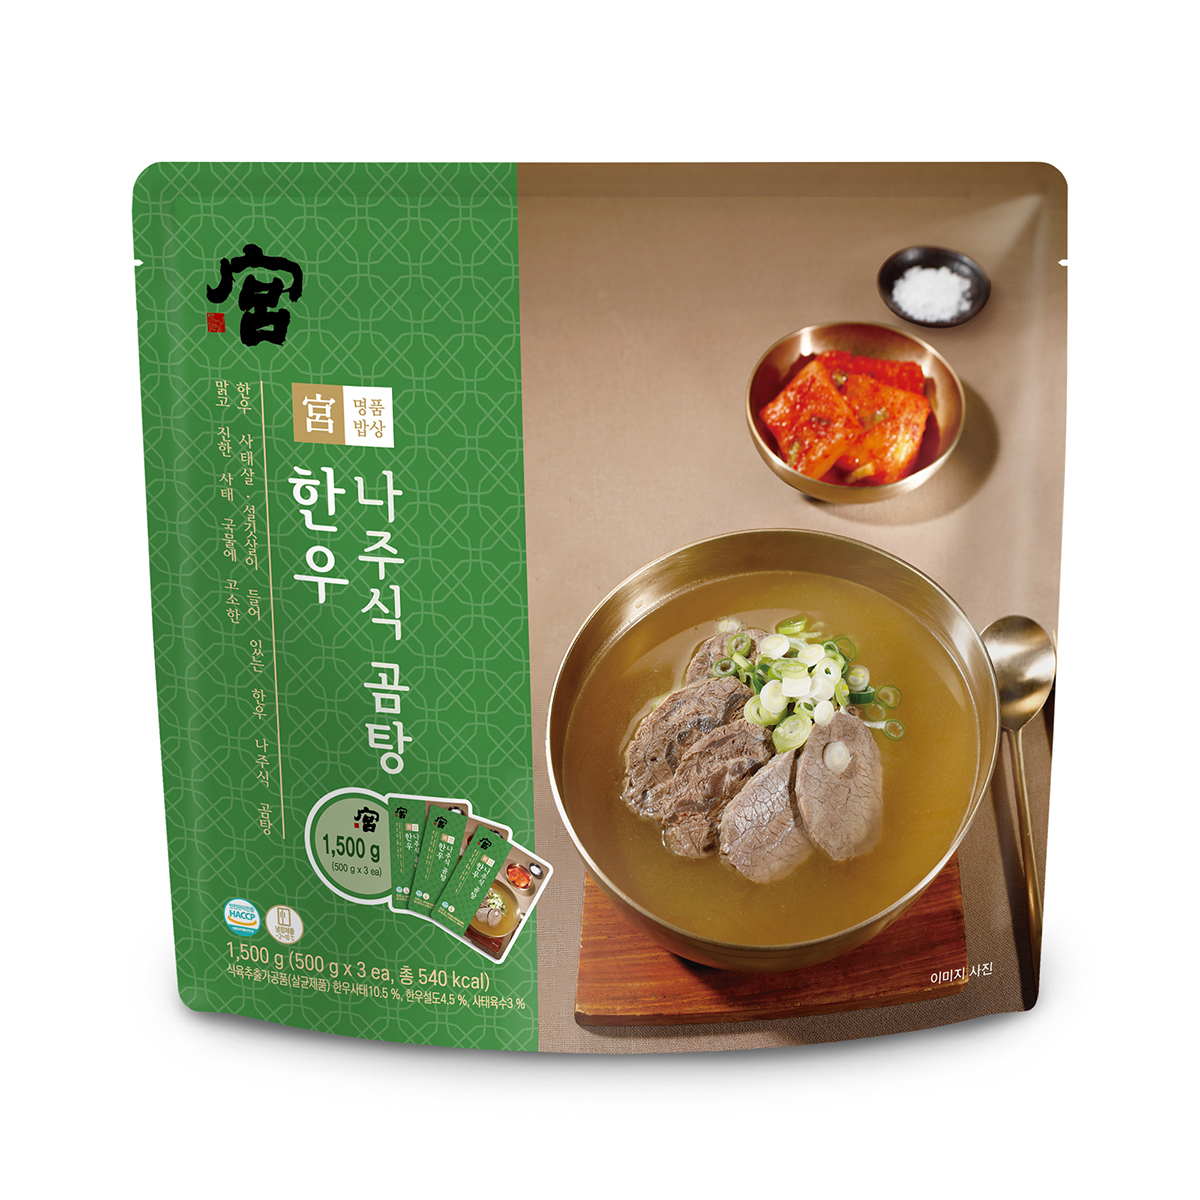 韓國食品-[Gong] Naju-style Gomtang 500g